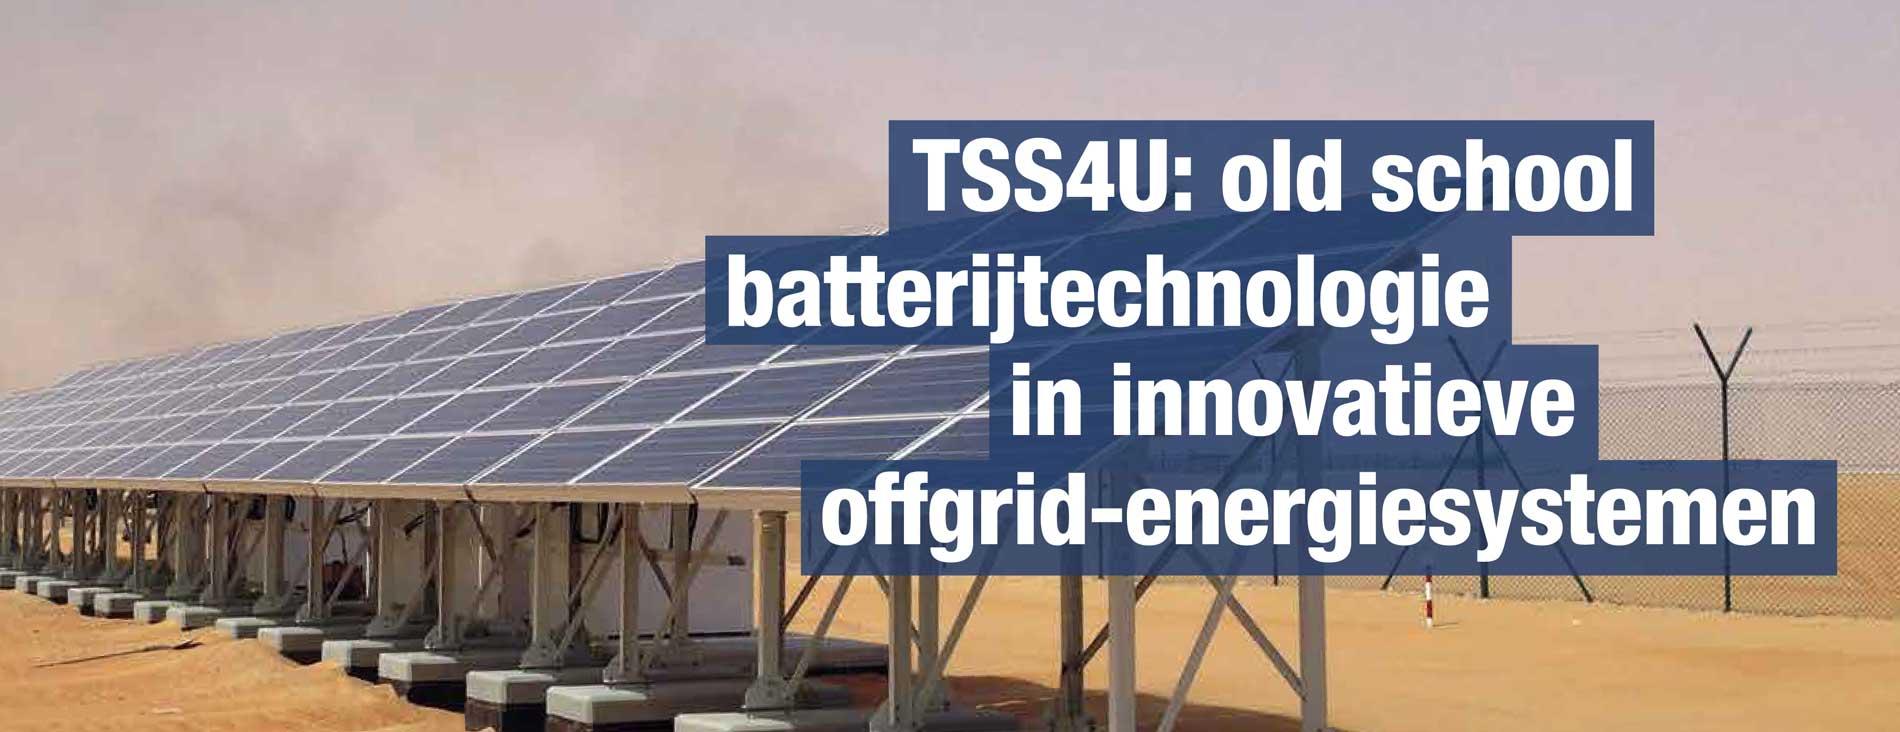 Product Old school batterij technologie in offgrid energiesystemen - TSS image